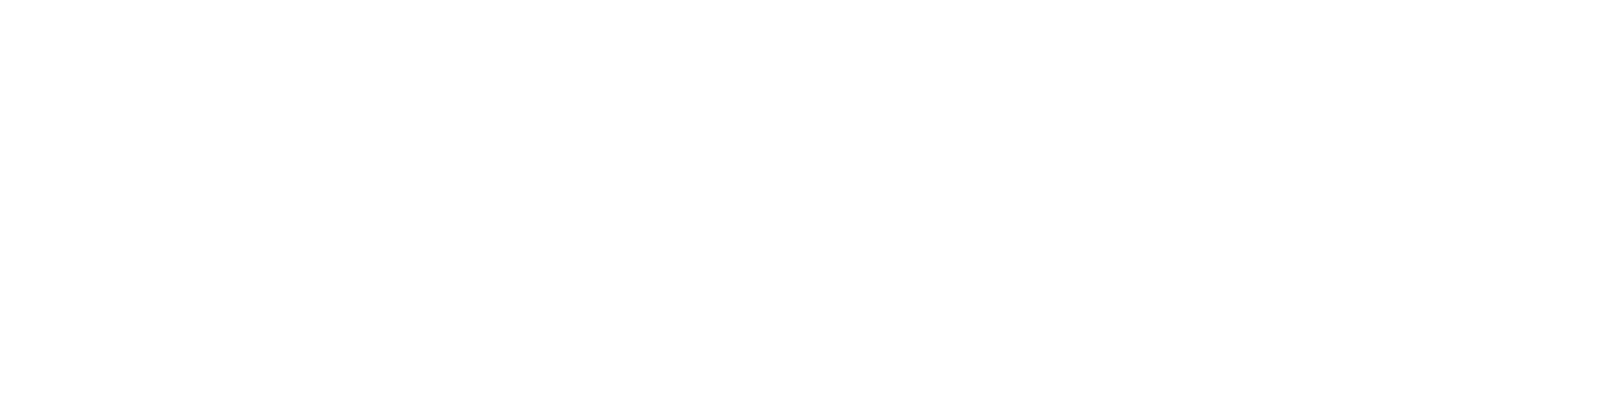 Establishment Labs logo large for dark backgrounds (transparent PNG)